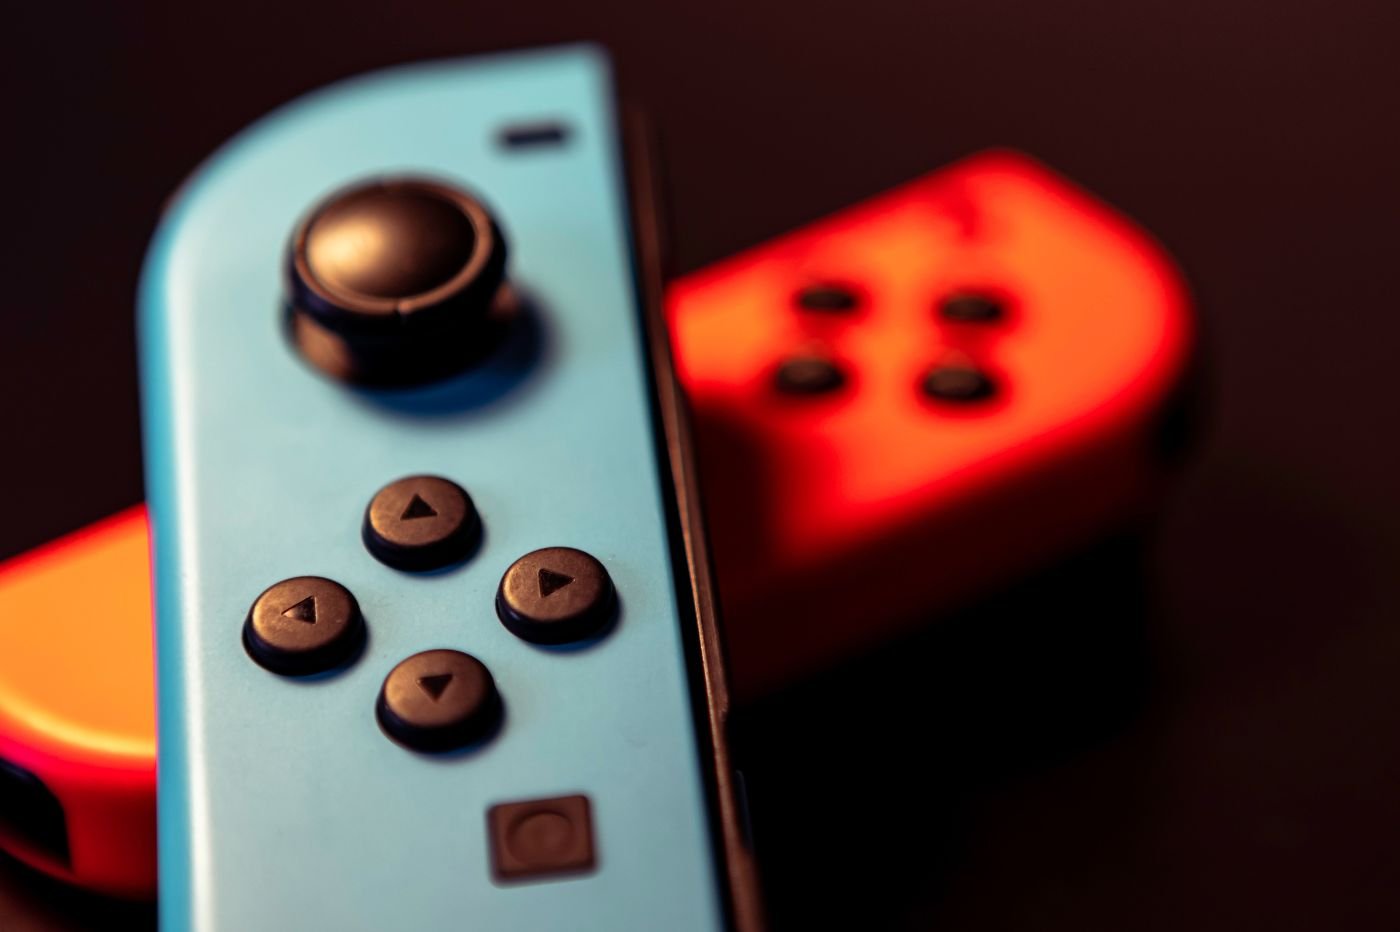 Joy-Con sur Nintendo Switch : on a essayé de faire réparer gratuitement une  manette défectueuse - Numerama